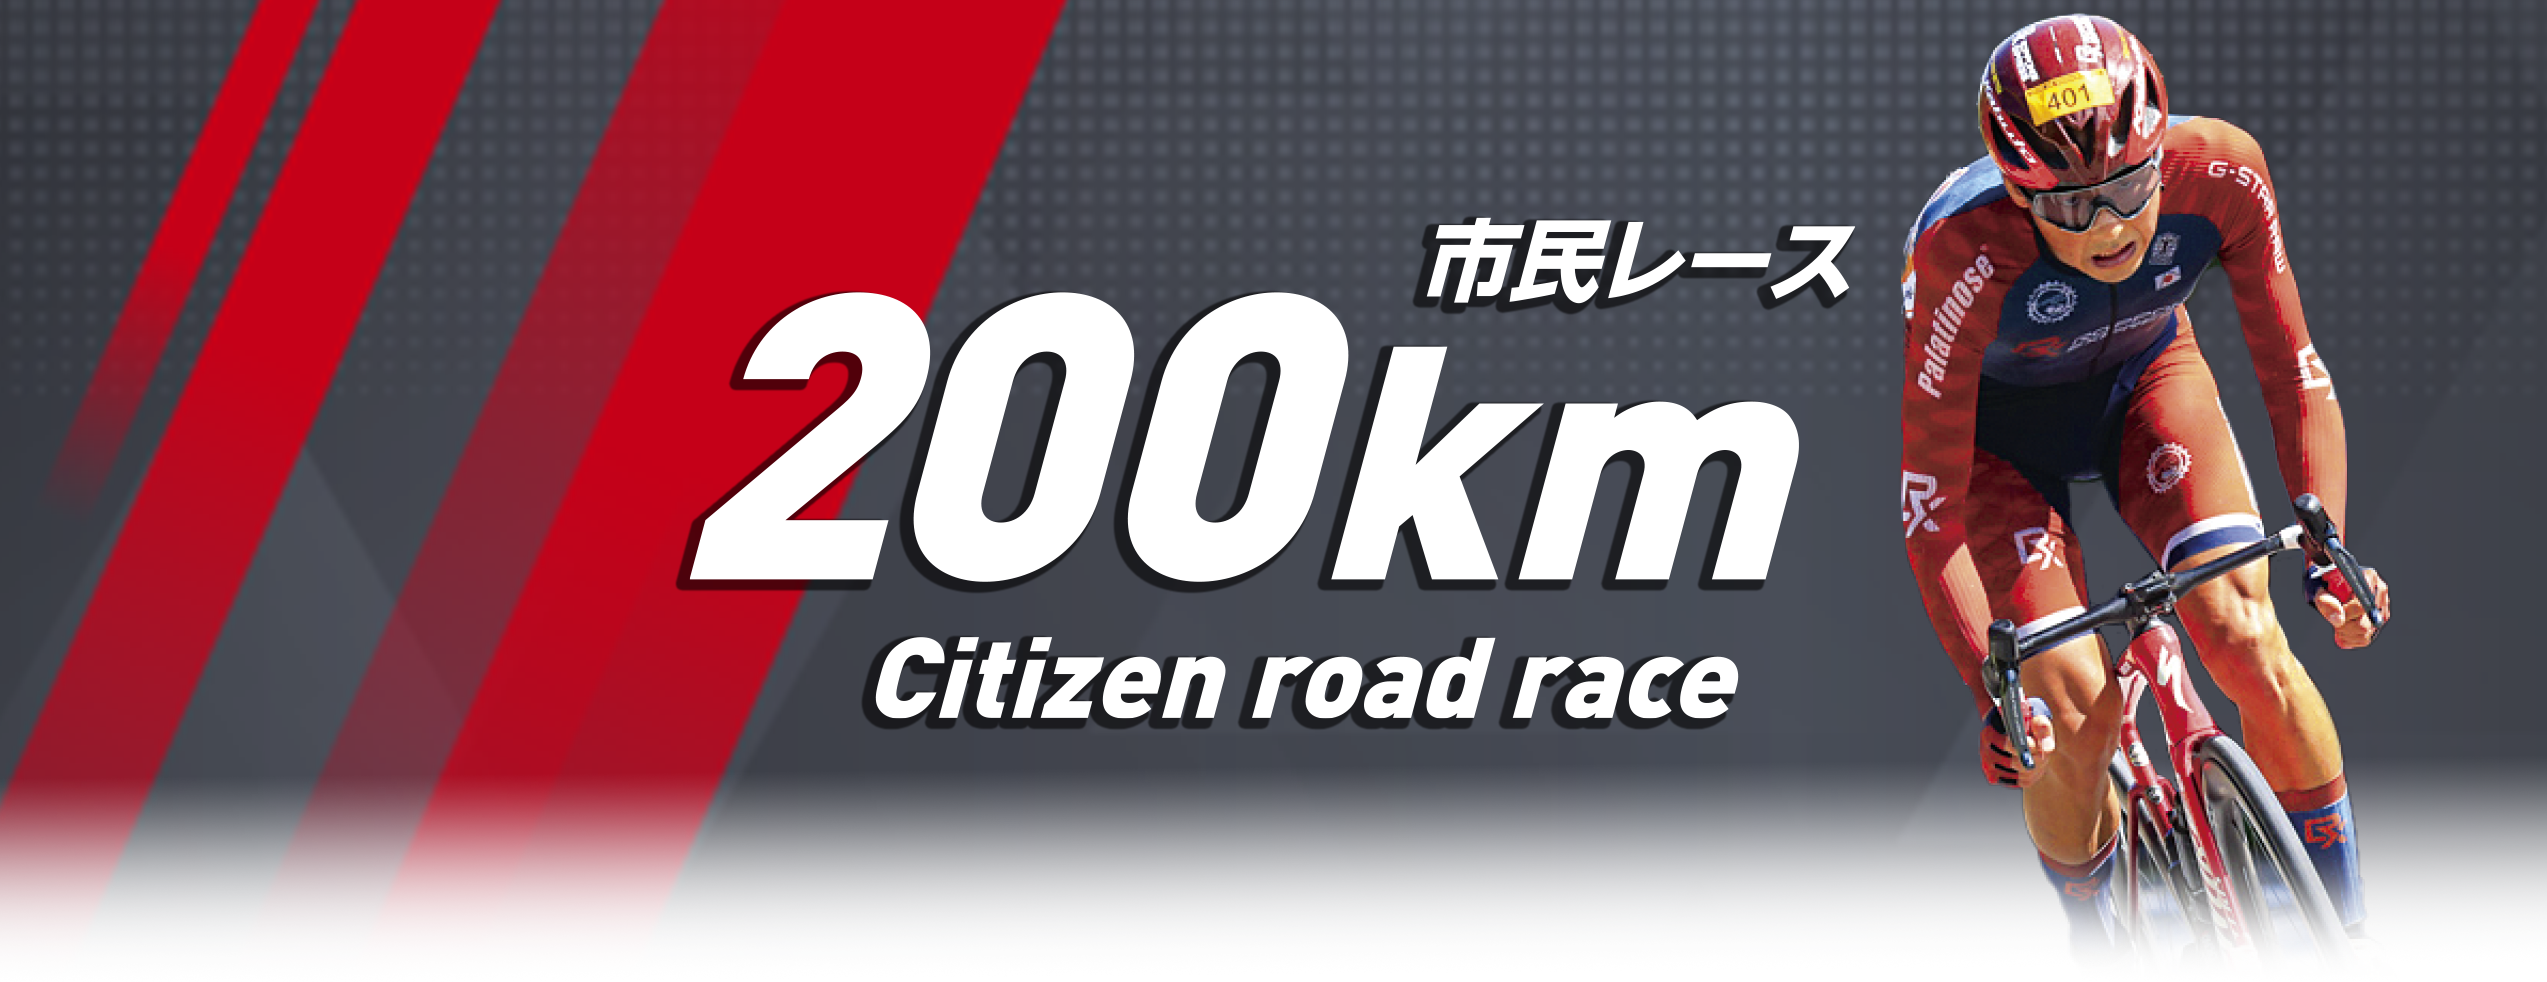 市民レース 210km